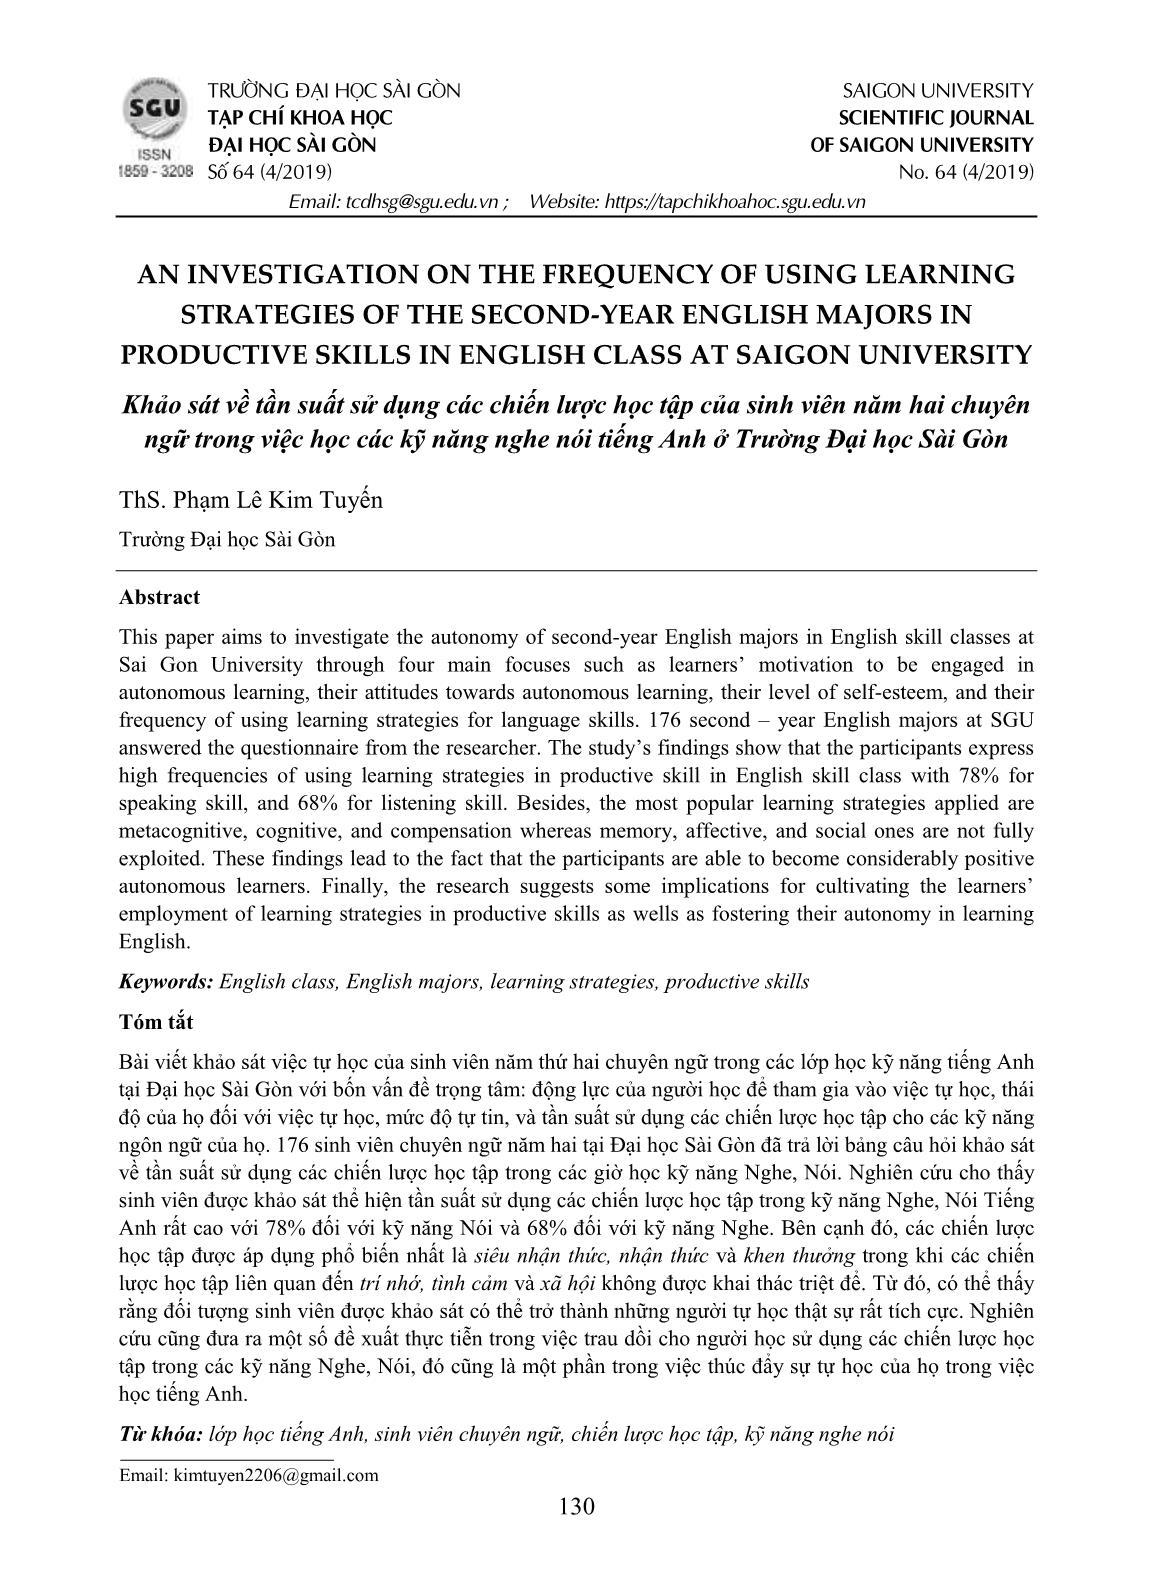 Khảo sát về tần suất sử dụng các chiến lược học tập của sinh viên năm hai chuyên ngữ trong việc học các kỹ năng nghe nói tiếng Anh ở Trường Đại học Sài Gòn trang 1